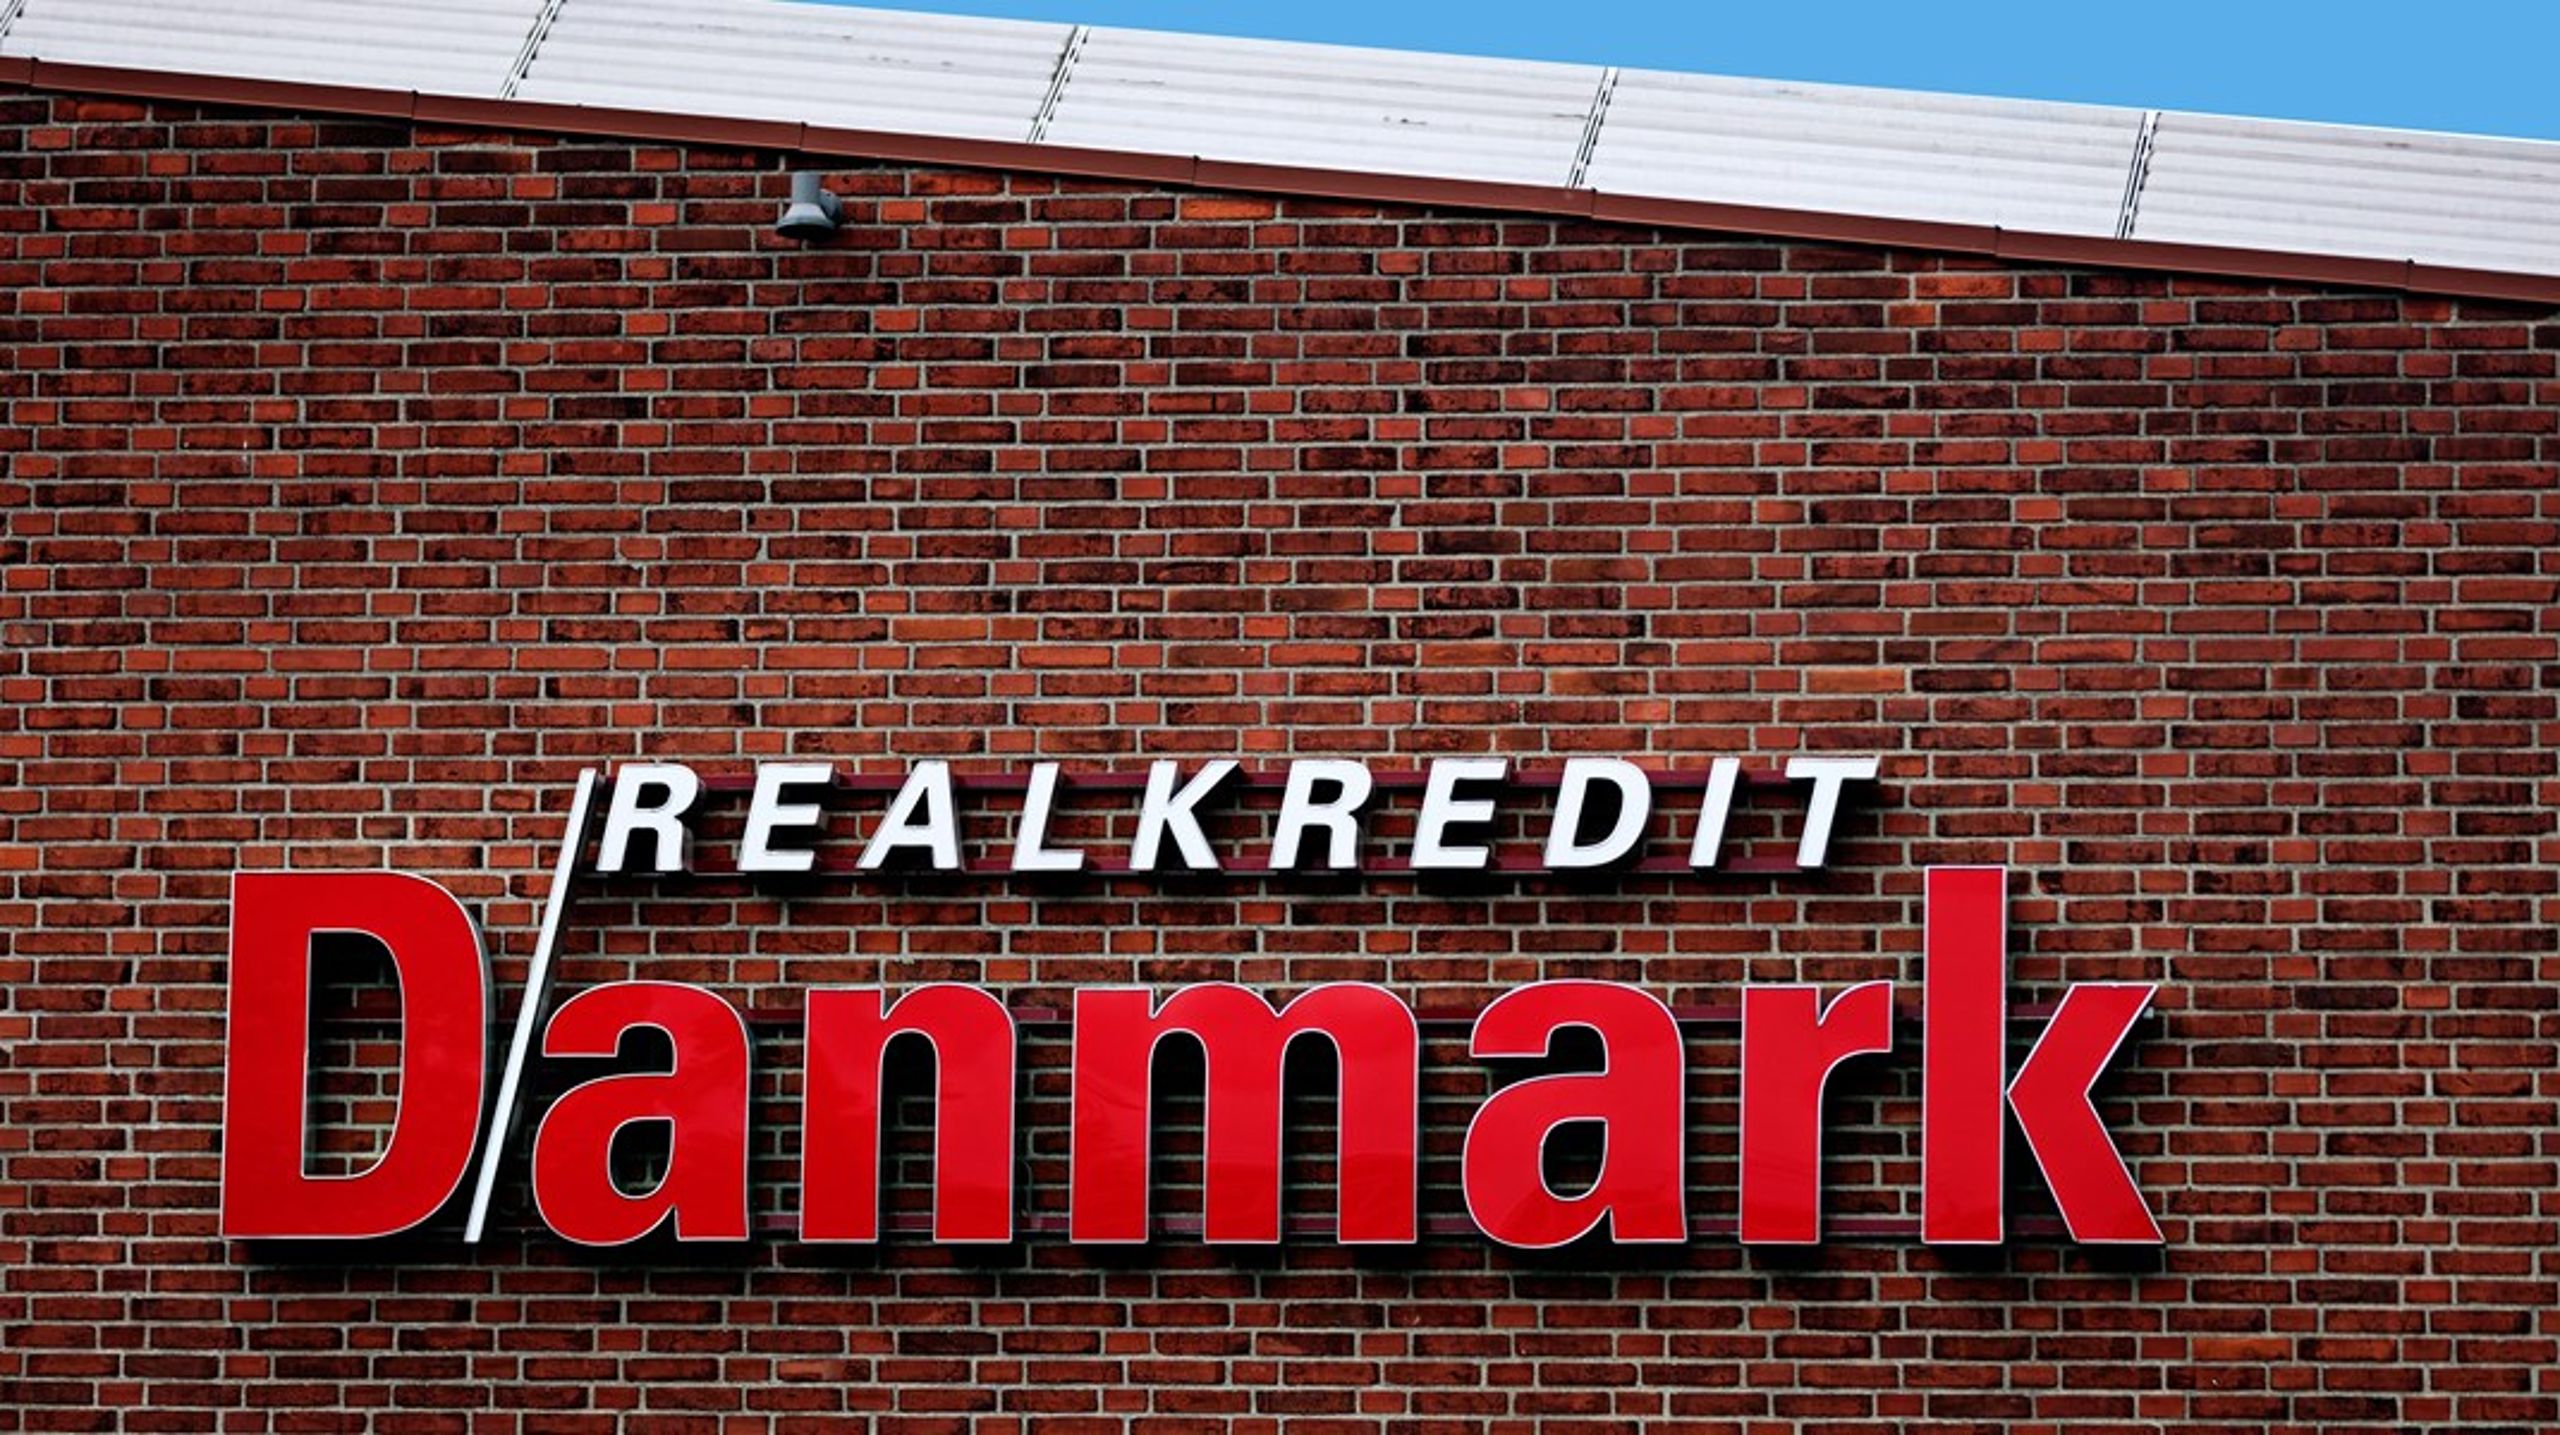 Realkredit Danmark er blandt landets største realkreditinstitutter målt på udlån.<br>